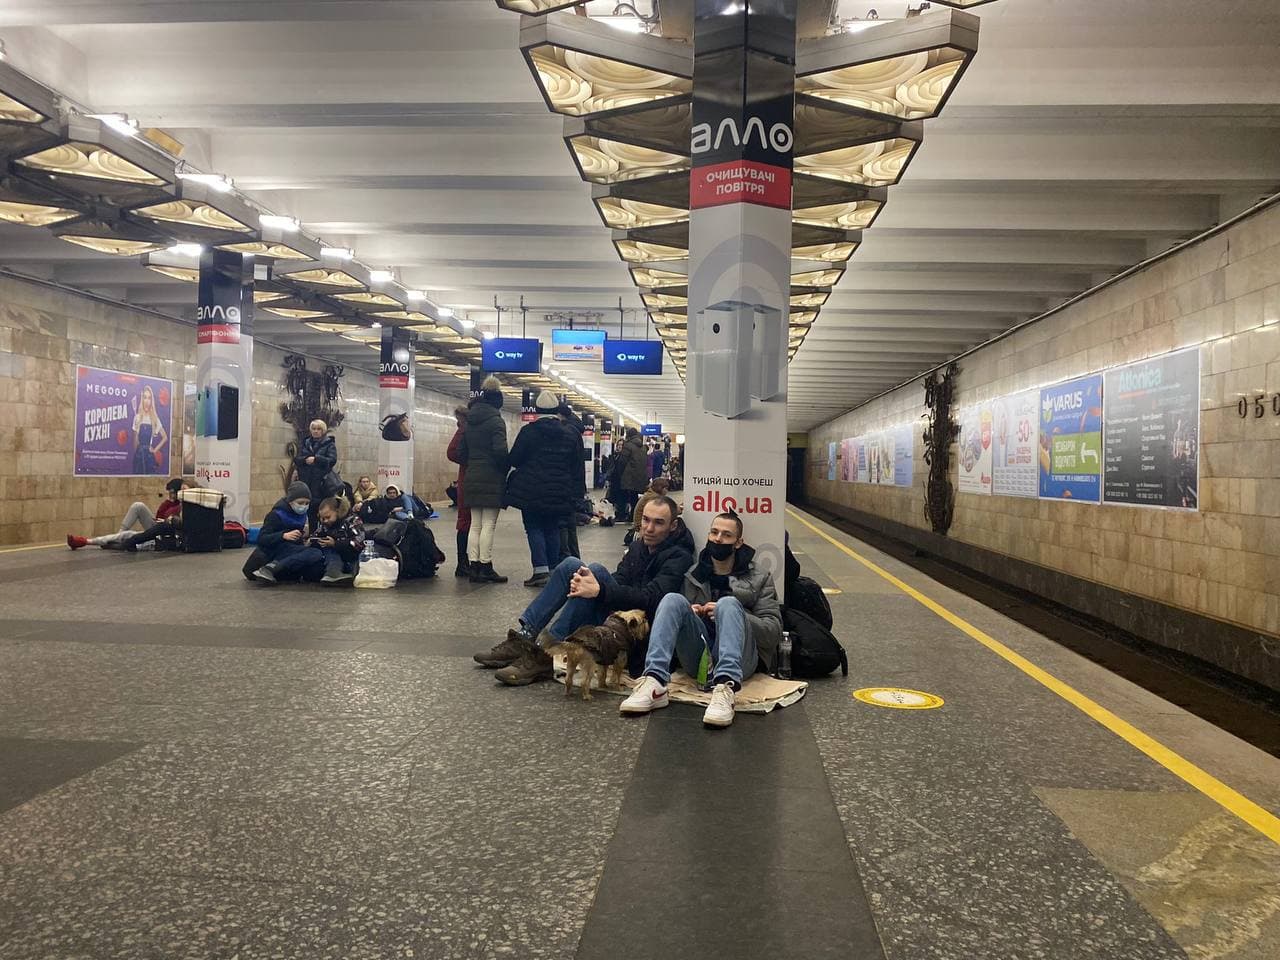 مردم کی اف در مترو